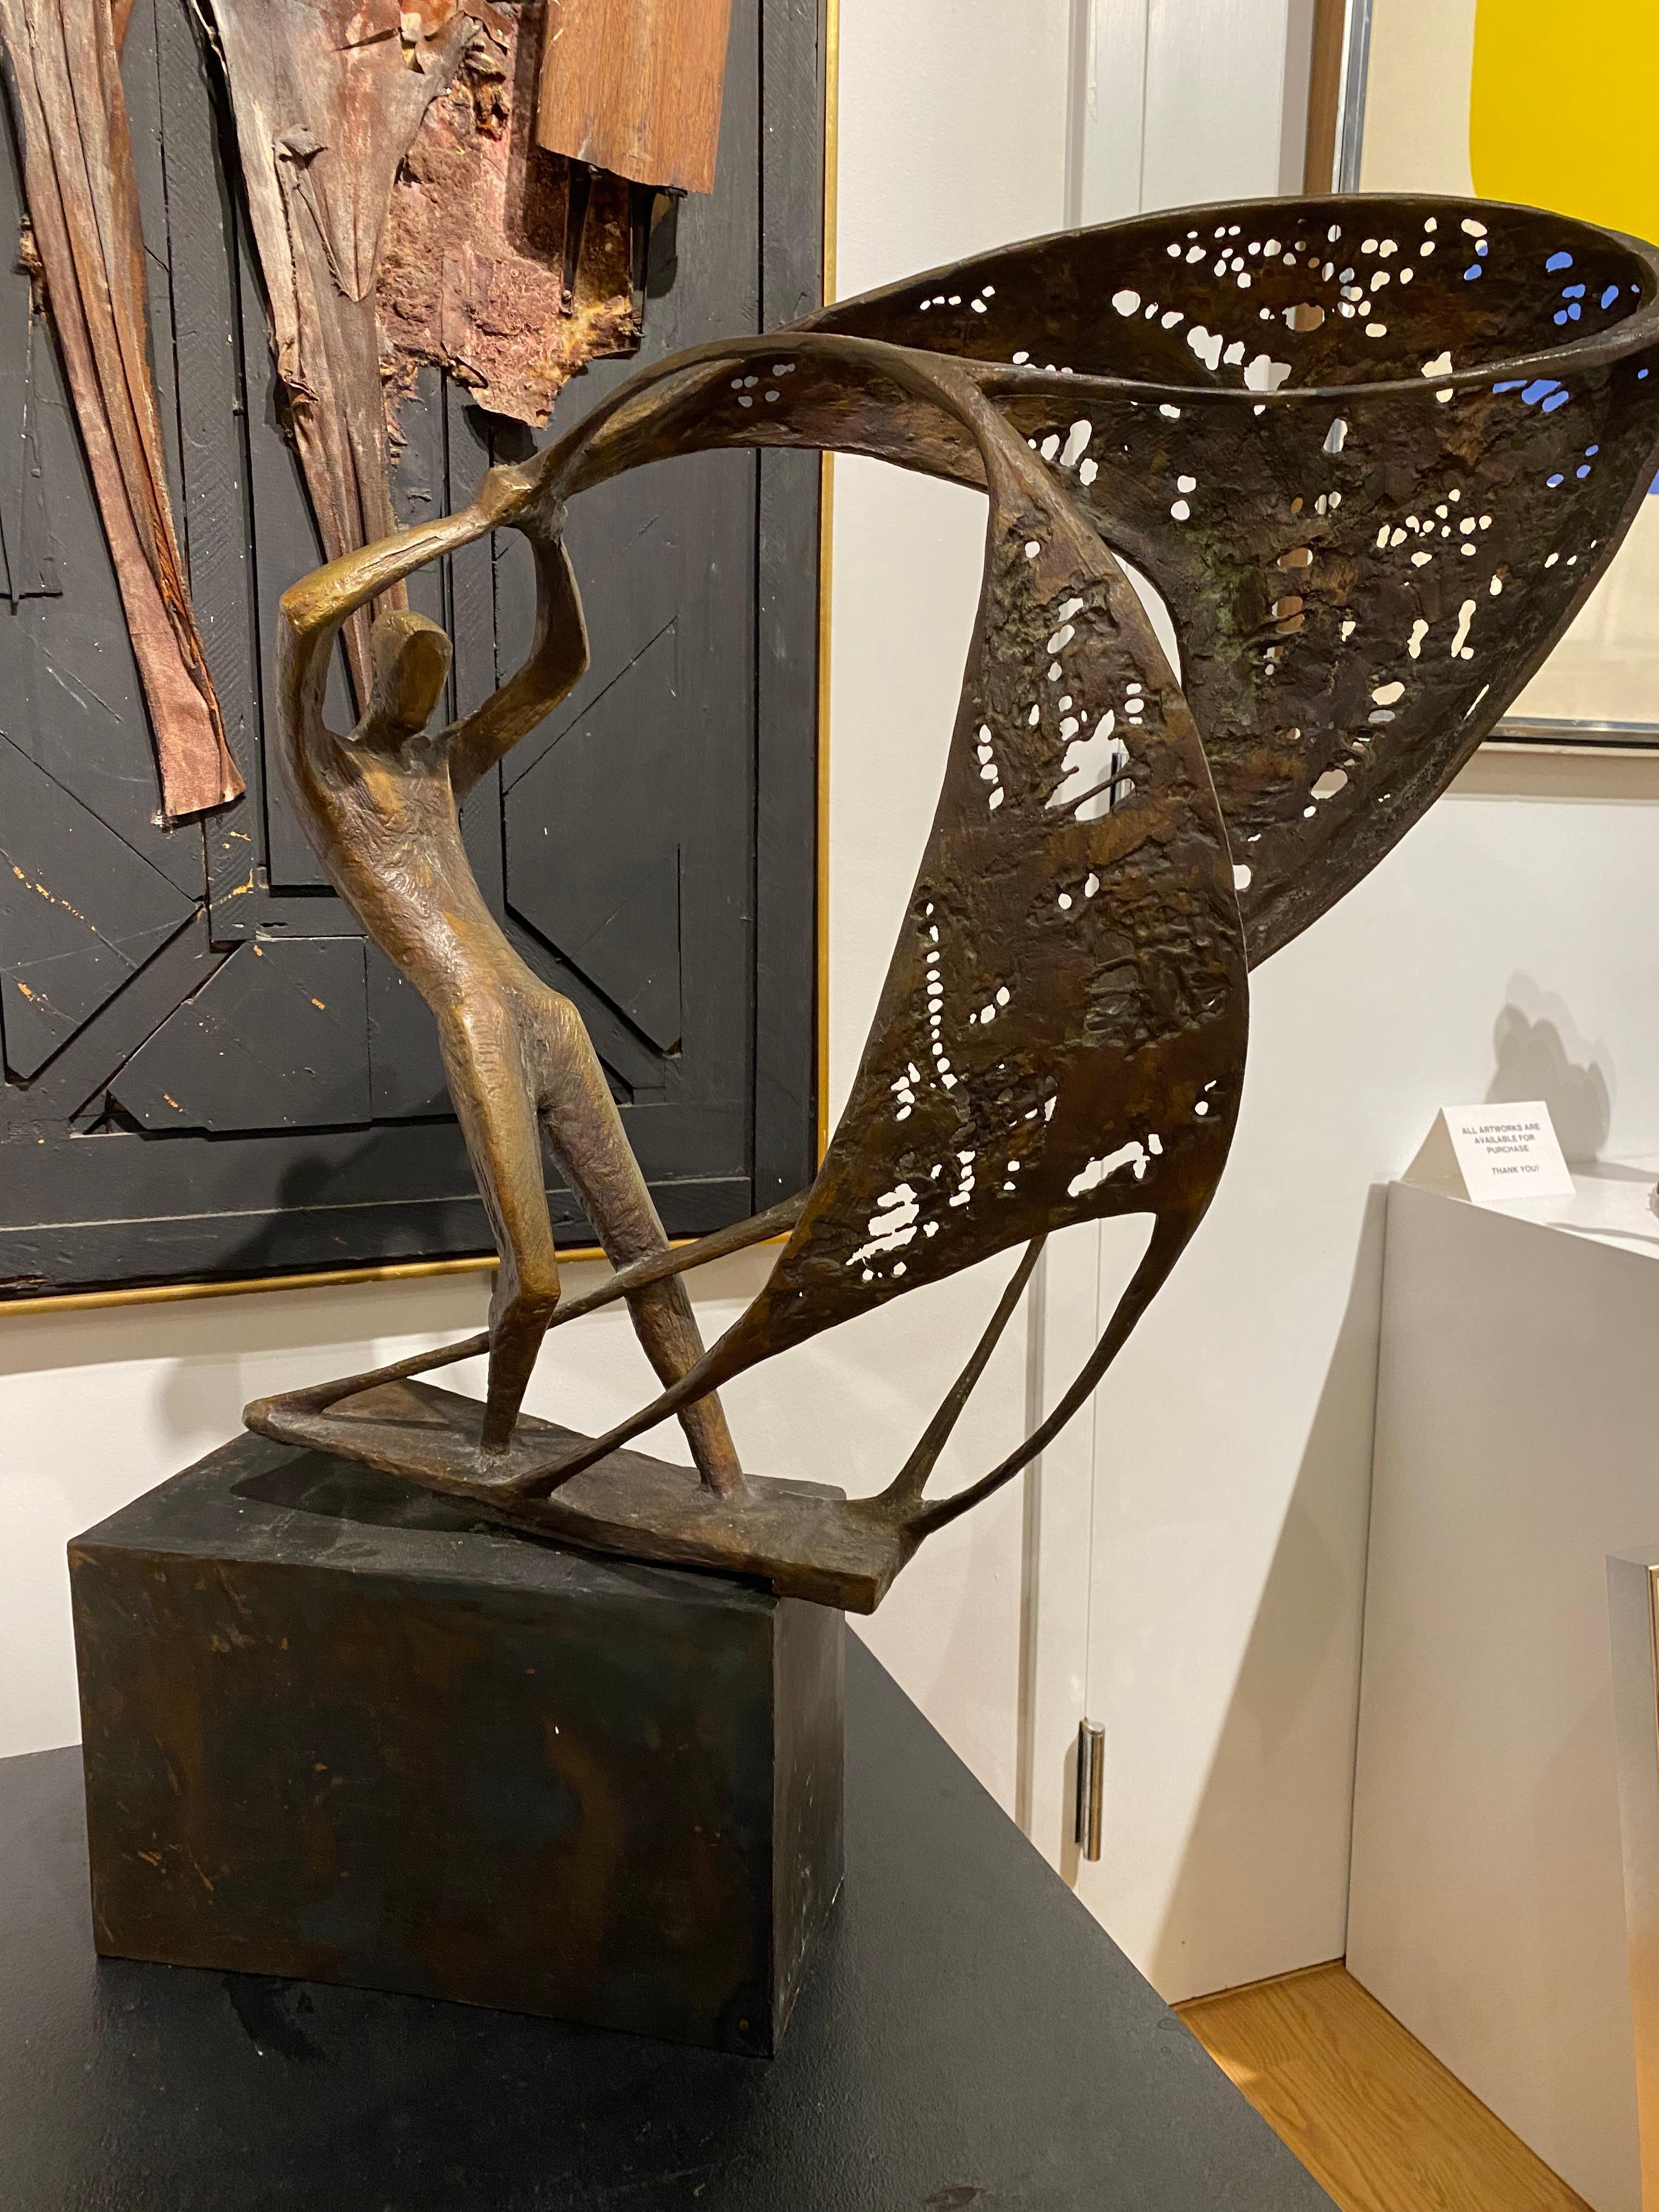 Fischer mit Netzen (Fisherman mit Netzen) – Sculpture von Ursula Hanke-Forster